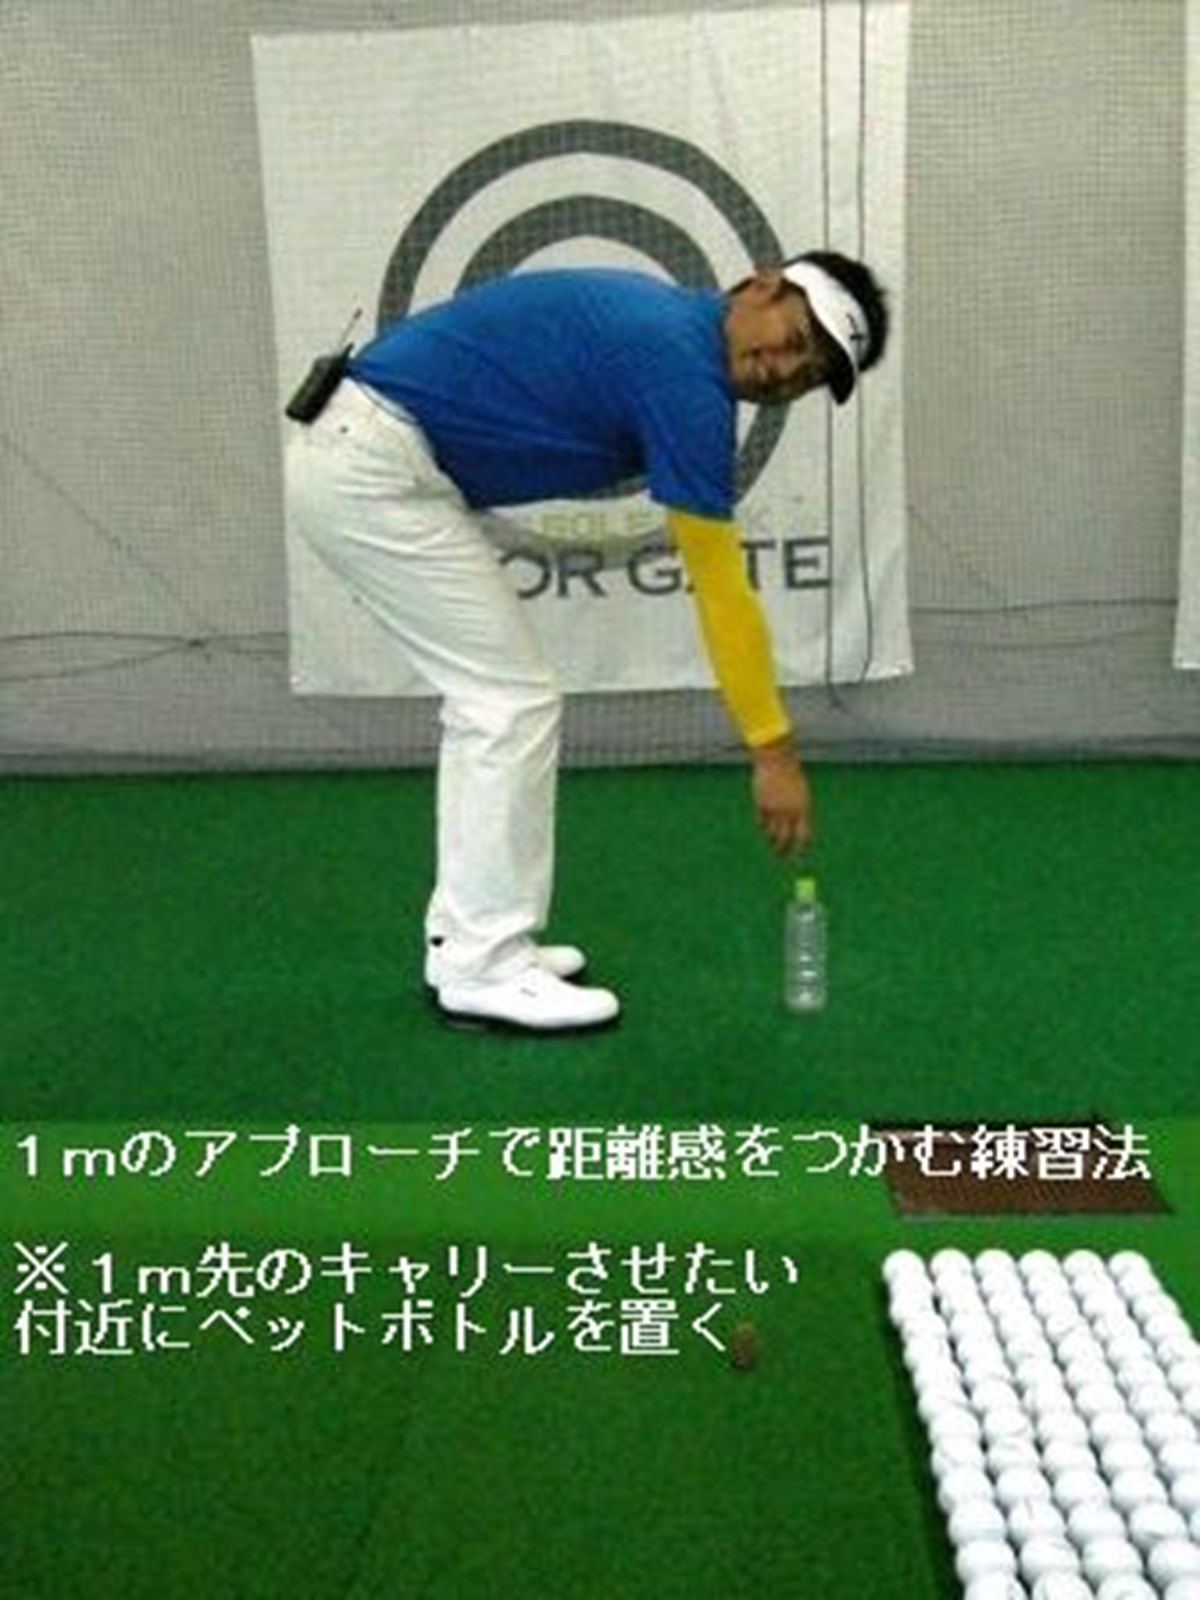 1mのアプローチで距離感をつかむ シチュエーション克服 Gdo ゴルフレッスン 練習